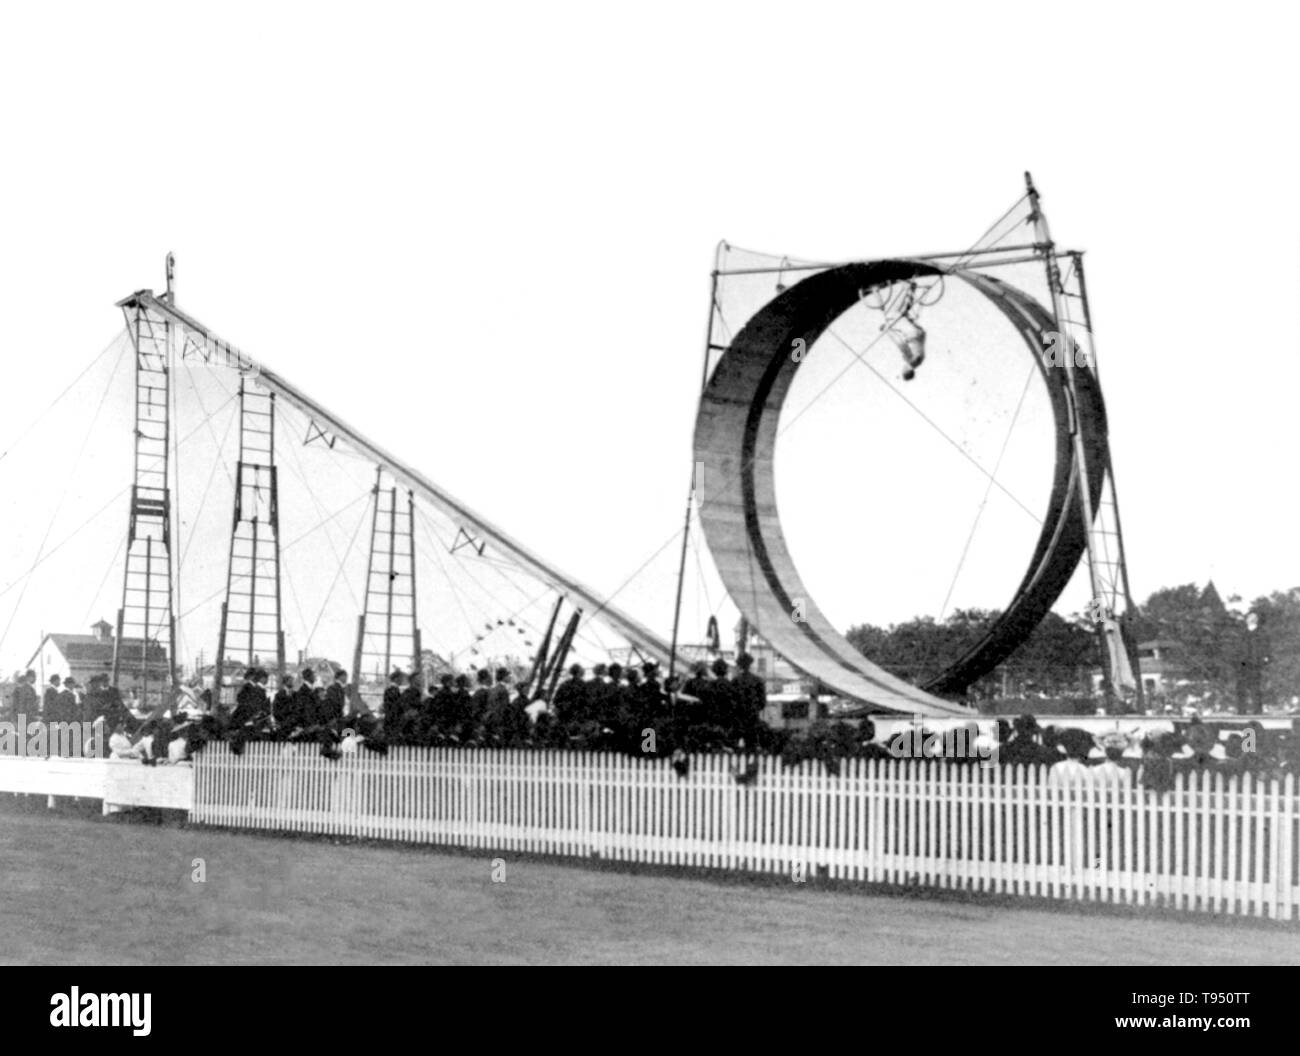 Titel: 'Diavolo Durchführen von seinem Fahrrad daredevil Handeln vor einem großen Publikum." Conn Baker (Januar 31, 1871 - Oktober 8, 1944) war ein US-amerikanischer Draufgänger und Künstler. Nahm er ein Fahrrad, das als Jugendlicher in den 1880er Jahren. Er hielt mehrere Weltrekorde für Geschwindigkeit und Ausdauer. Baker war die erste Person, die eine perfekte 'Loop-the-Loop' durch ein sicheres Fahrrad. Er verband die Forepaugh und Verkauft Circus im Jahr 1901, die unter dem Künstlernamen von J.C. Stockfoto